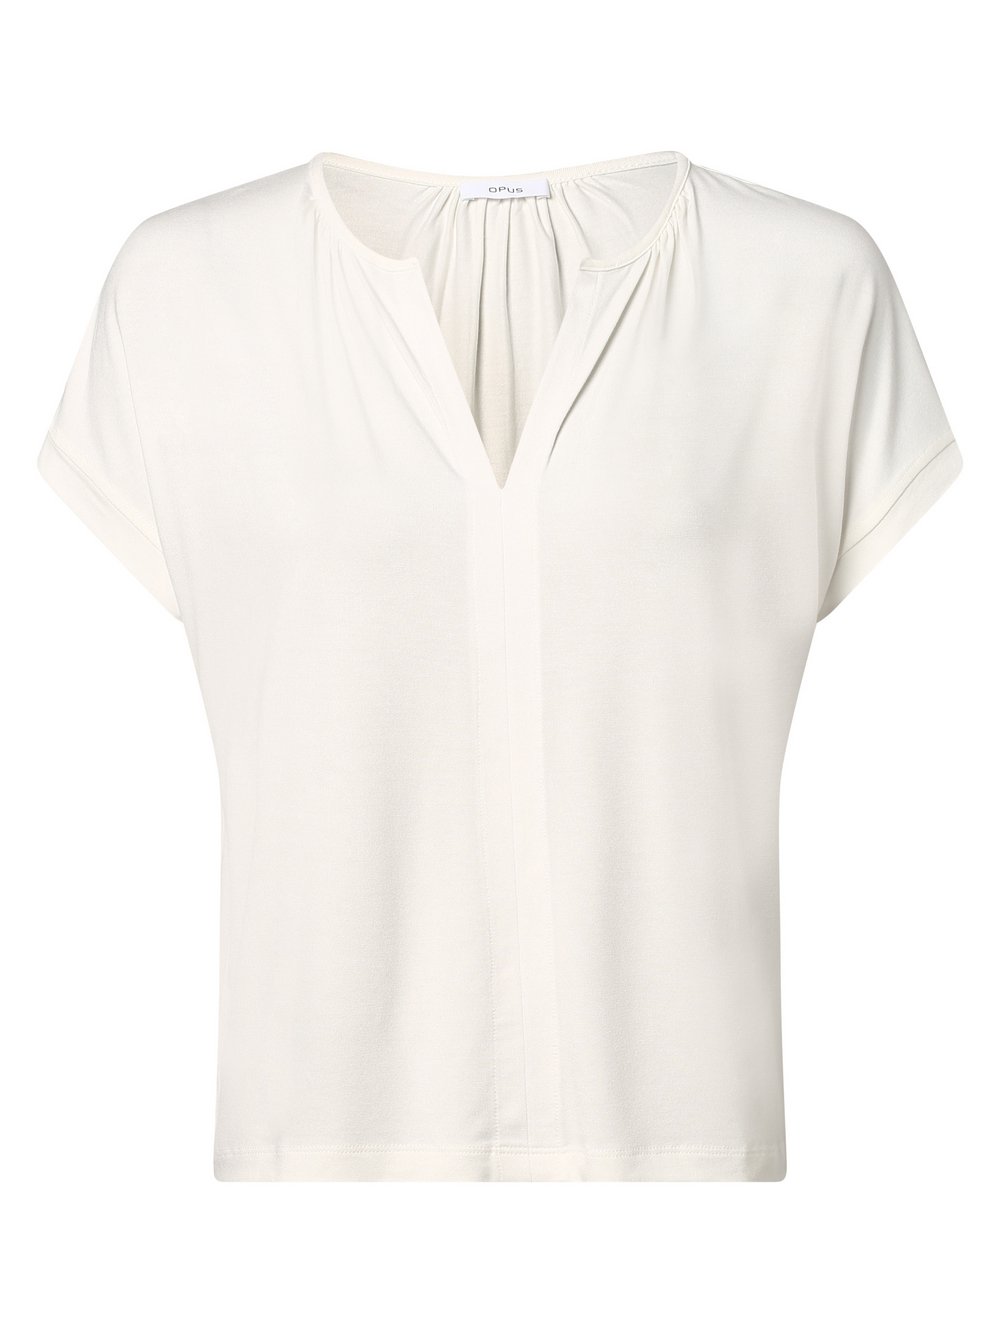 Opus T-shirt damski Kobiety Dżersej biały jednolity, 40